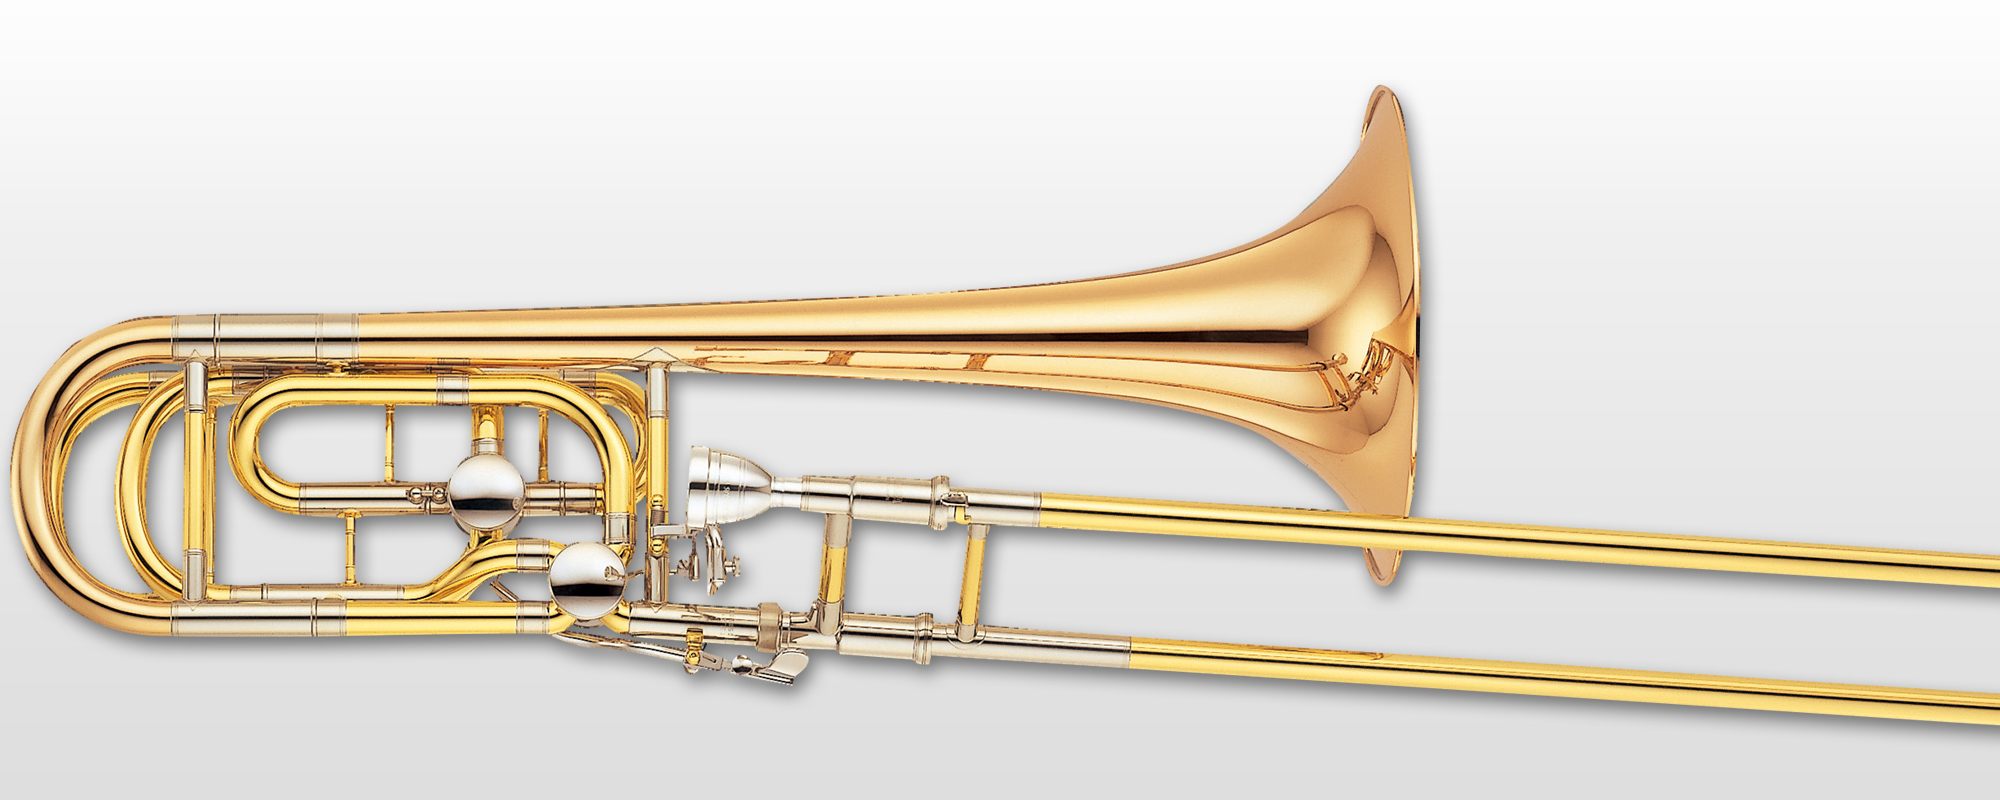 YBL-822G - Overview - Trombones - Brass & Woodwinds - Musical 